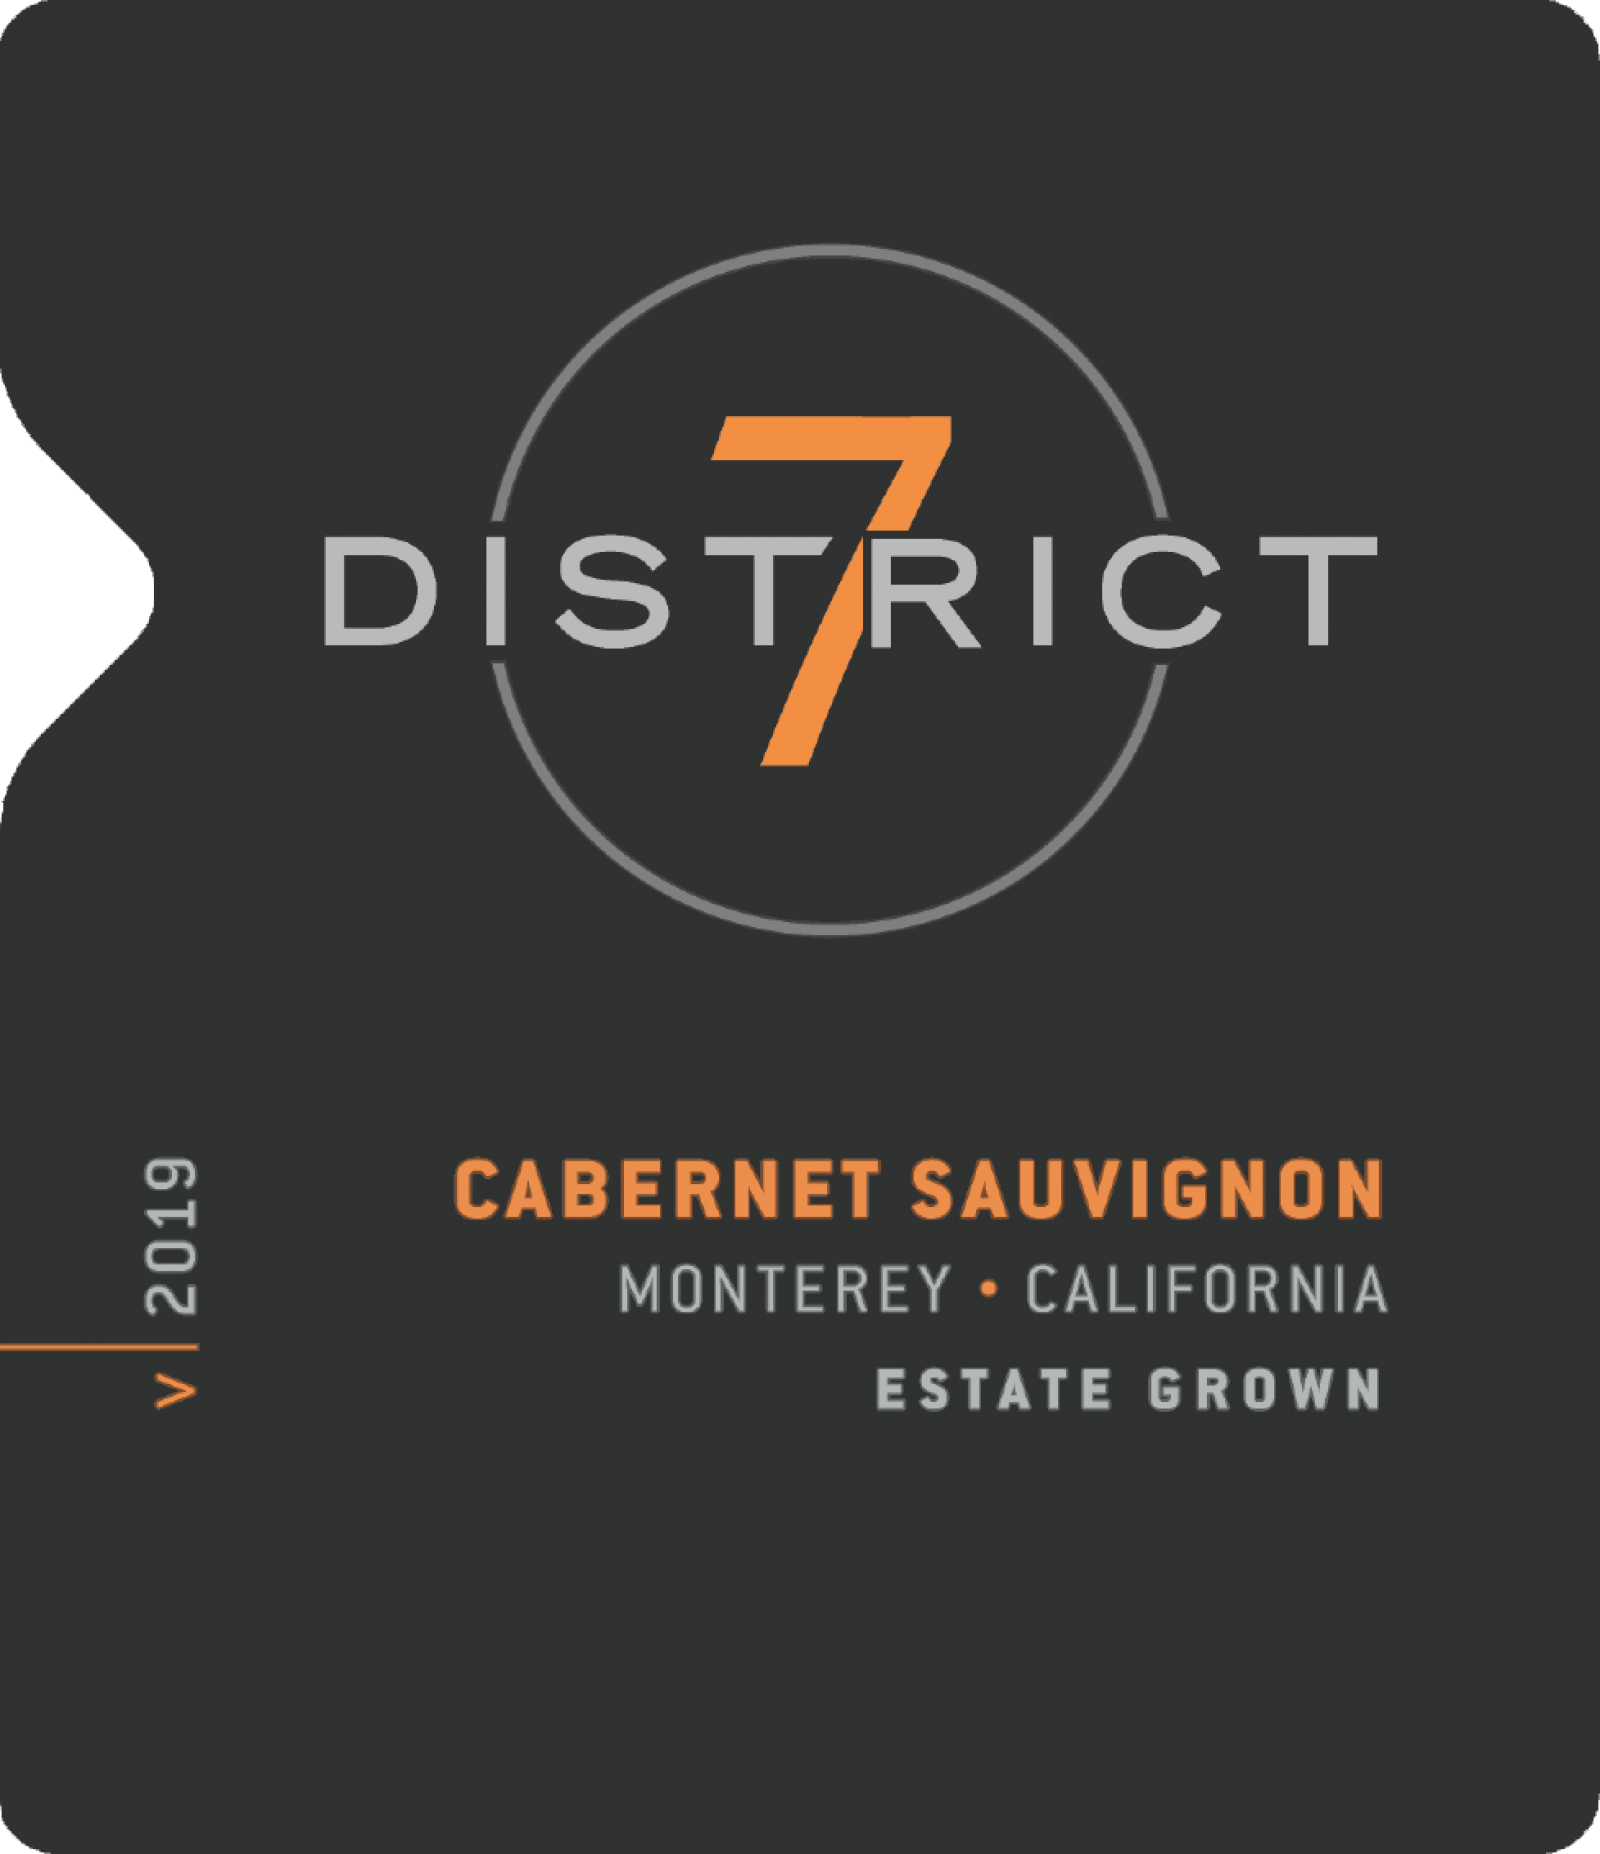 District 7 Cabernet Sauvignon 2019